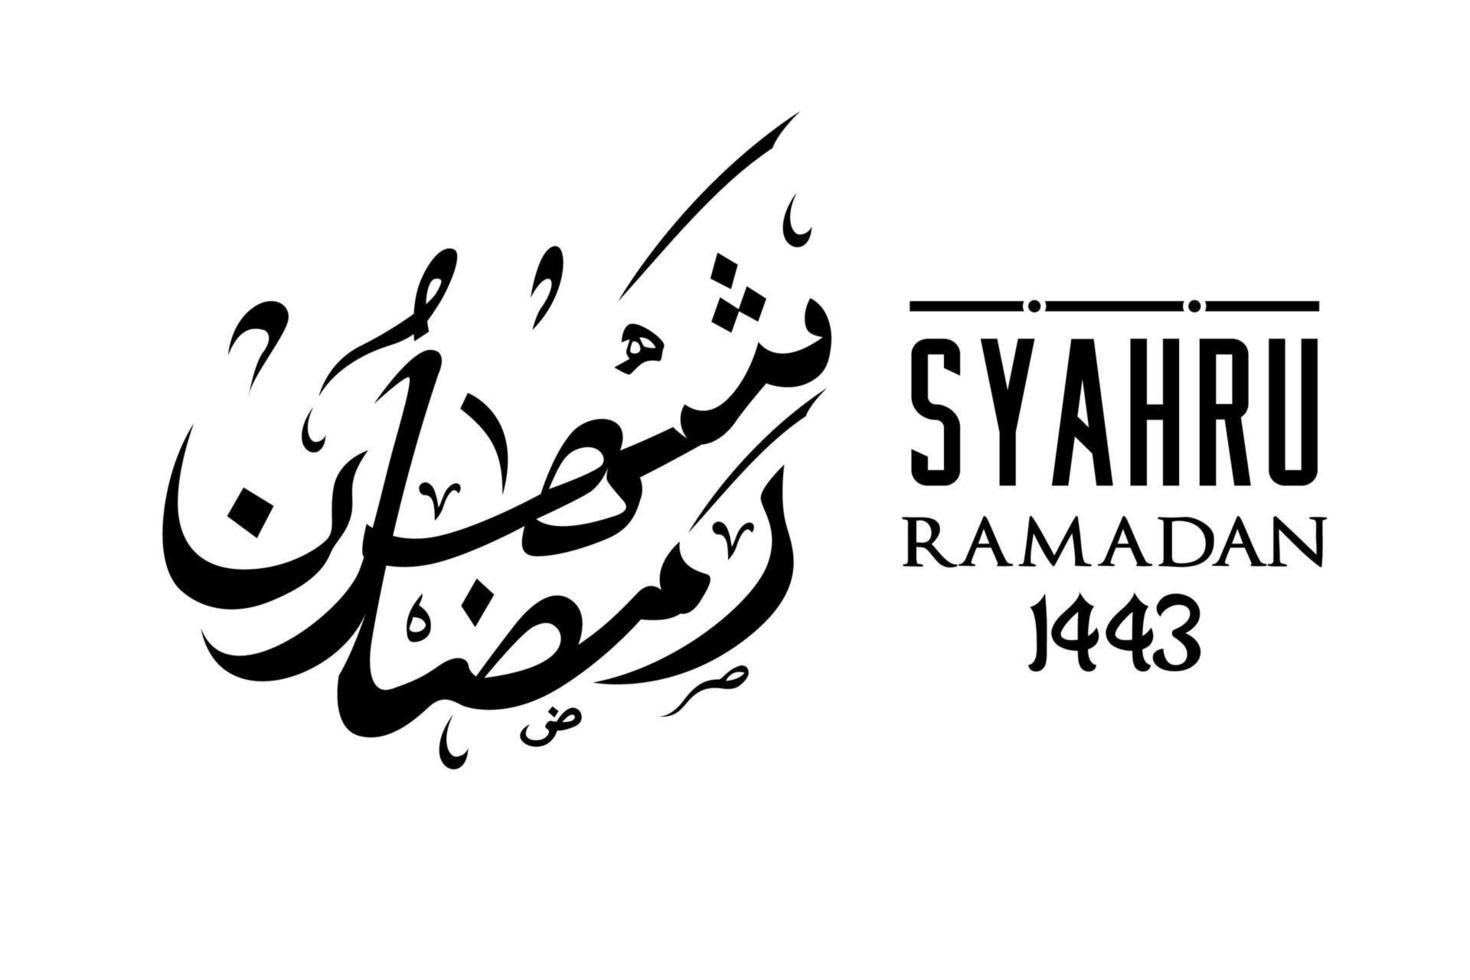 syahru ramadan schreibt arabische kalligrafie-design-inspiration vektor